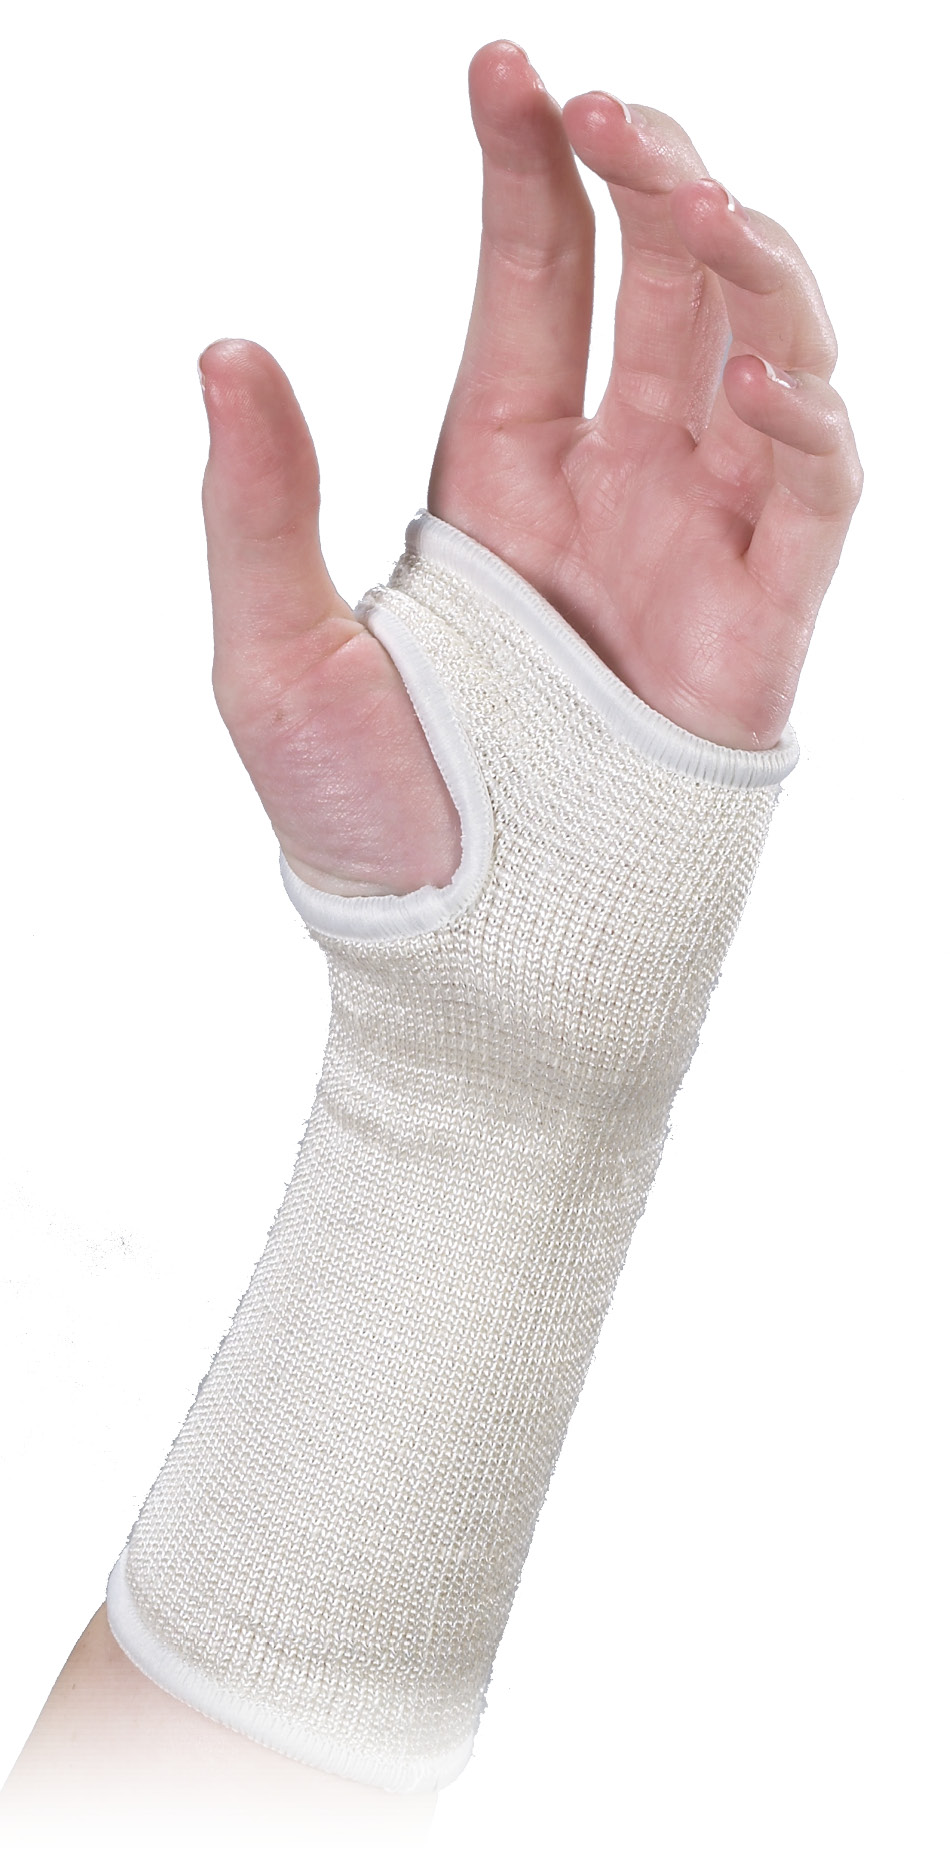 Slipon Wrist Support, Beige - Medium